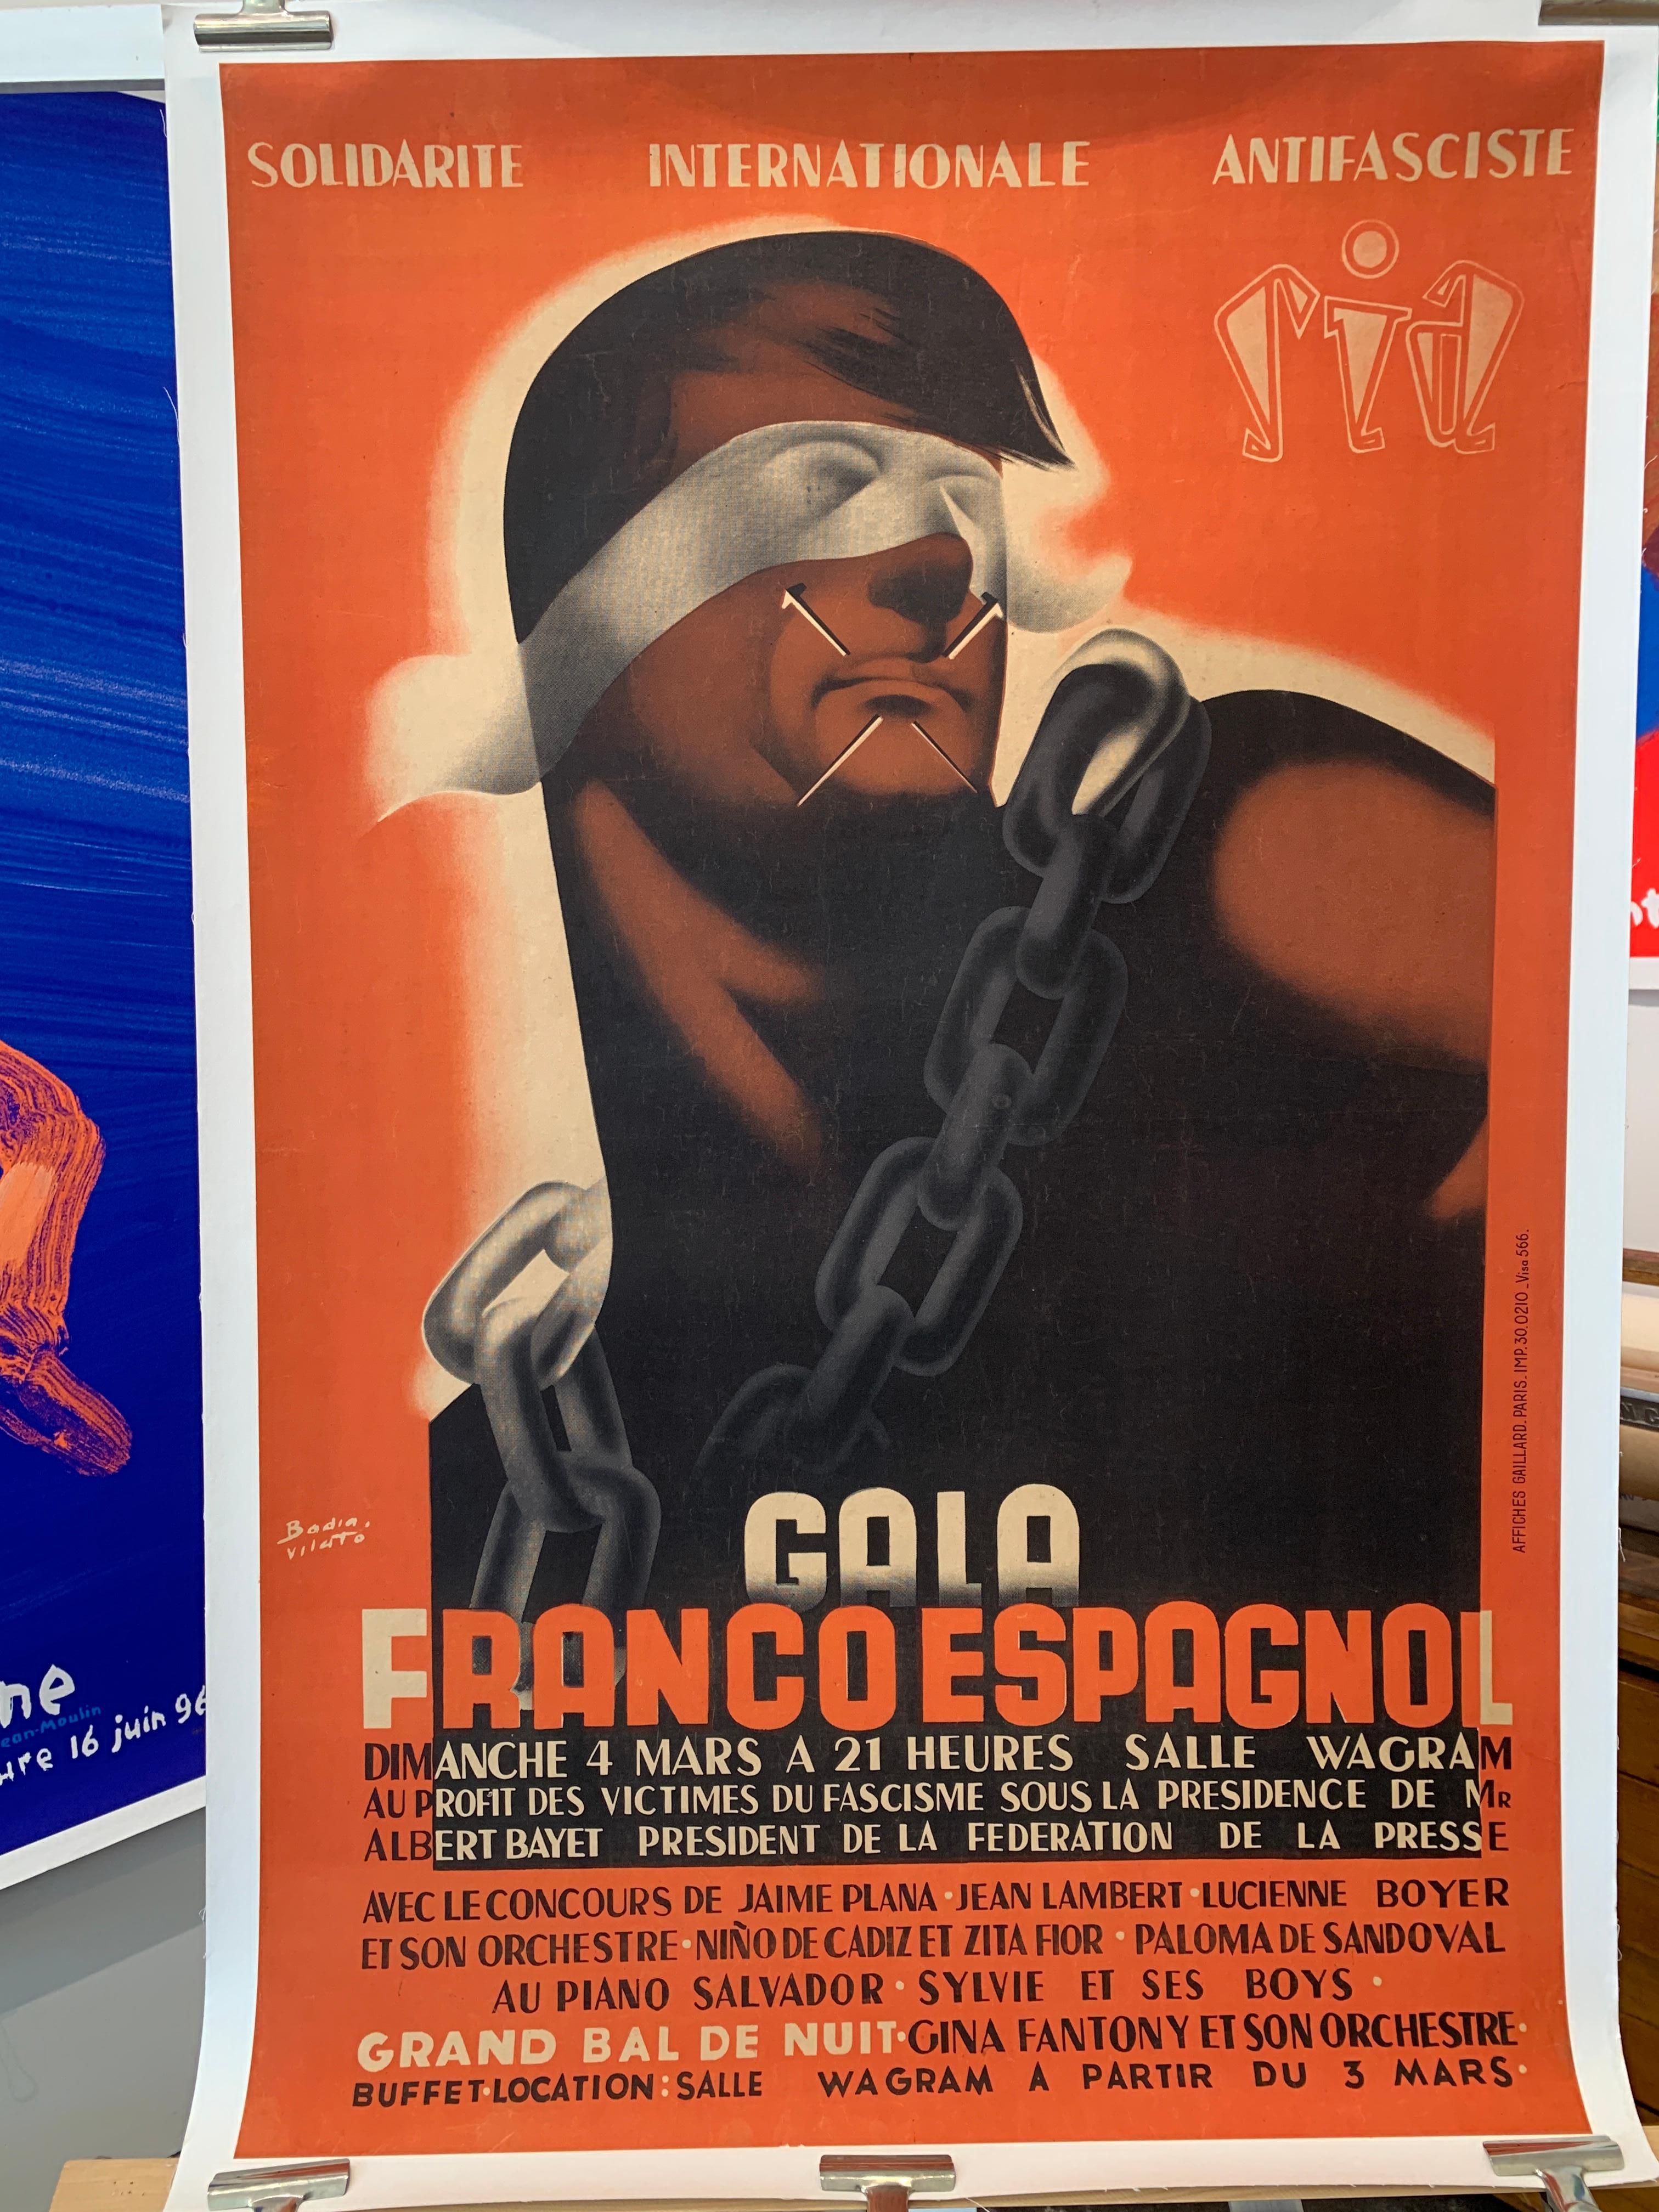 Affiche politique originale de Gala FRANCO ESPAGNOL

Il s'agit d'une affiche originale d'époque représentant Francisco Franco, qui, à la tête des forces nationalistes, a renversé la deuxième République espagnole pendant la guerre civile espagnole et